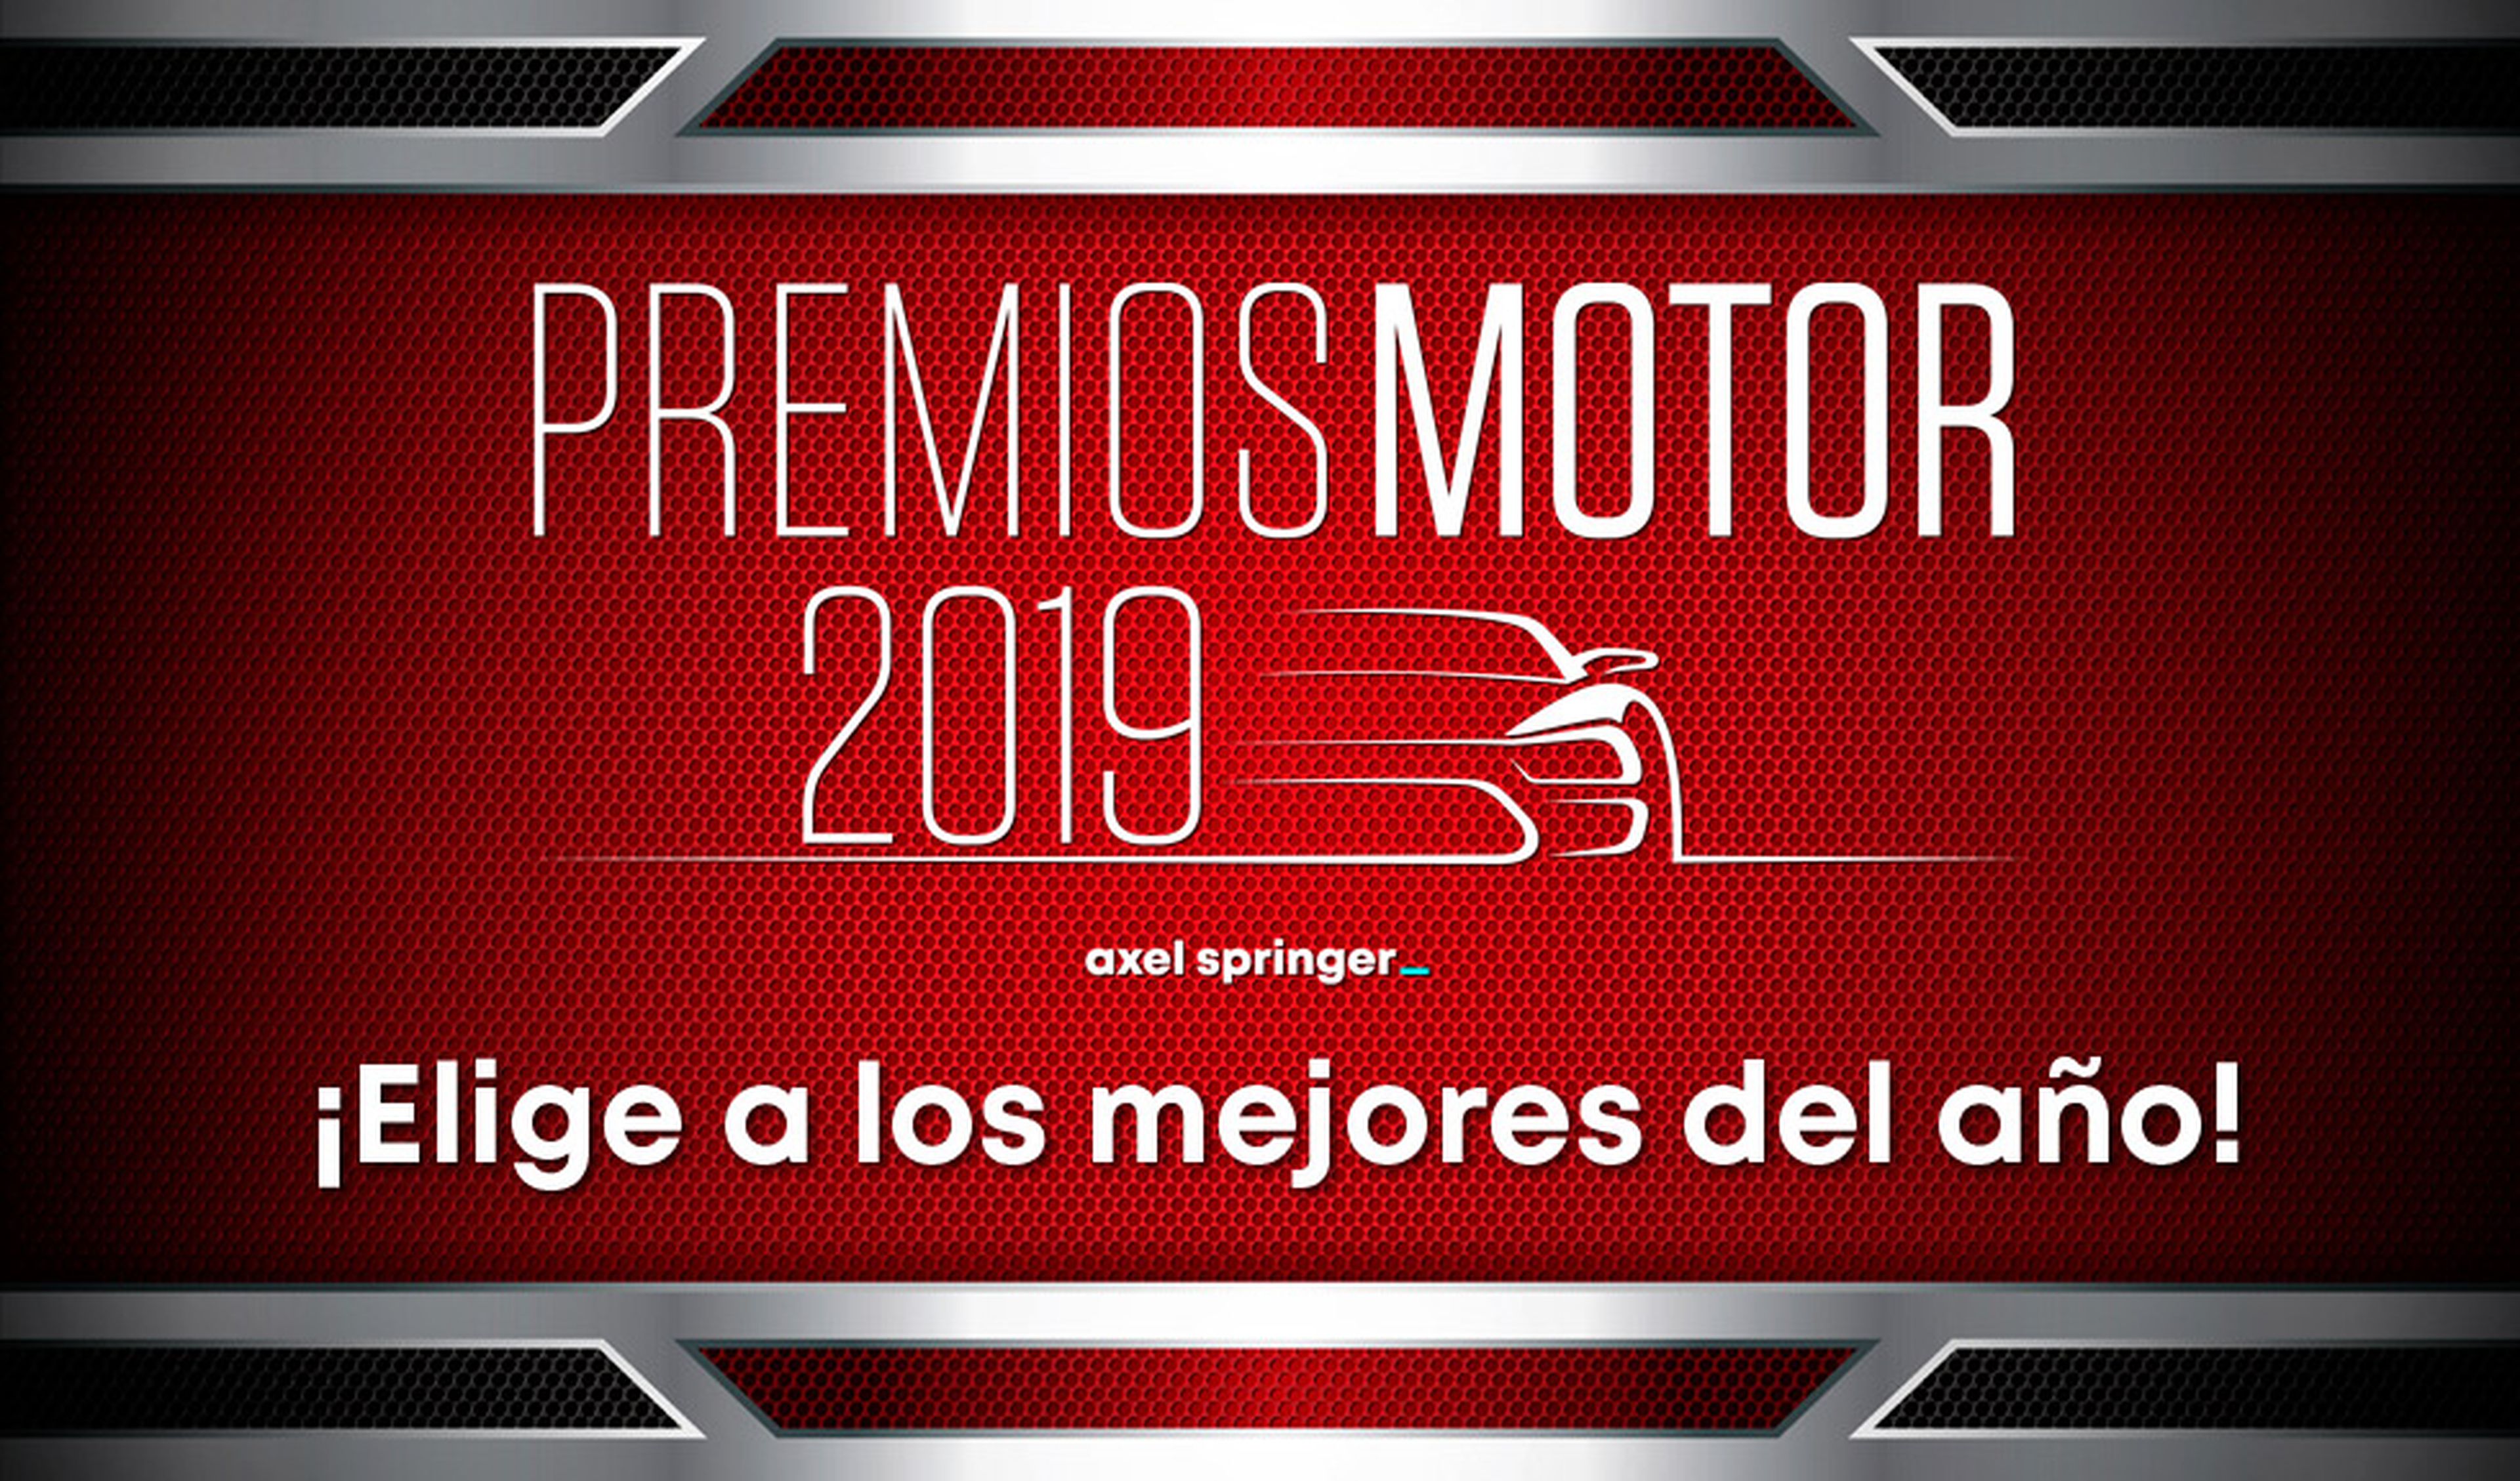 Premios Motor 2019